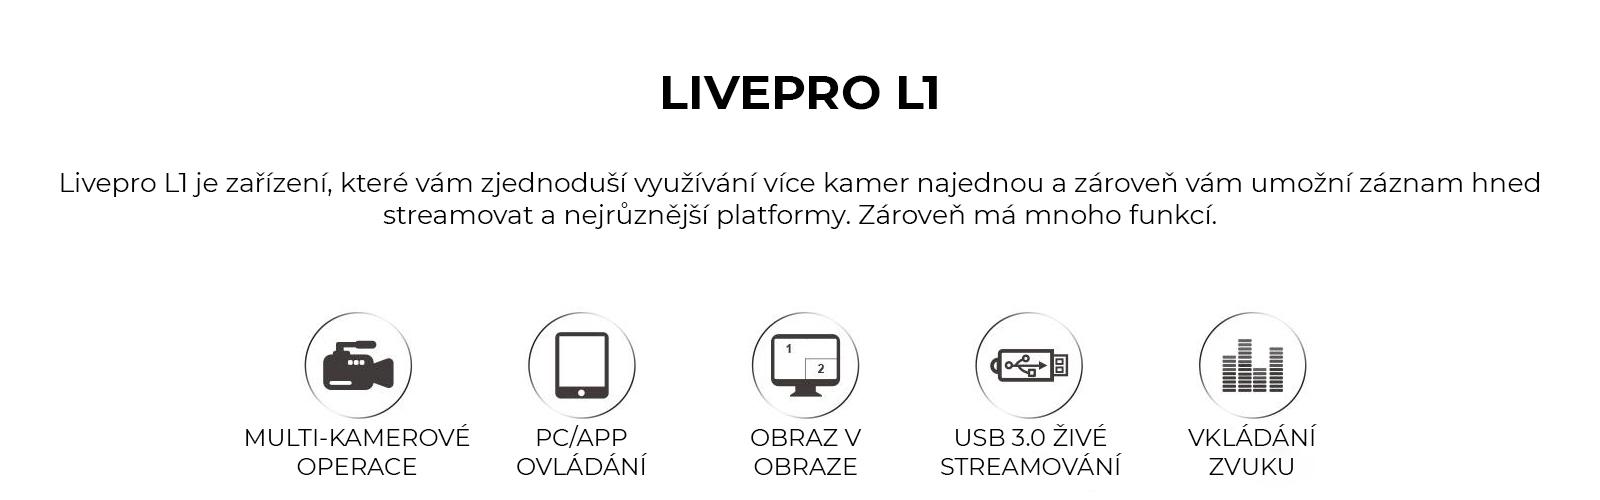 livepro_002